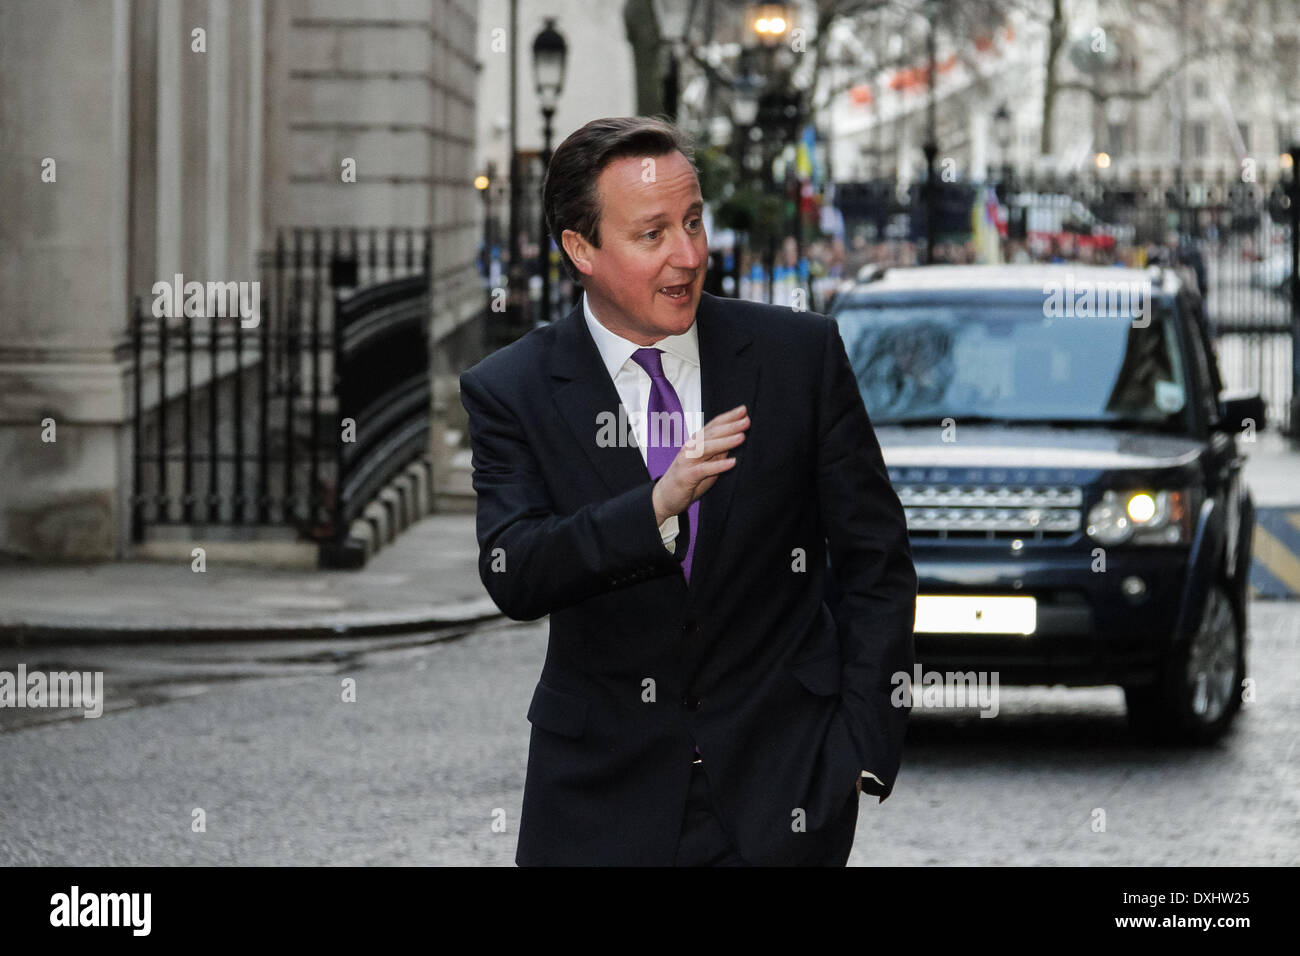 Londres, Royaume-Uni. 26 mars 2014. Le Premier ministre britannique David Cameron à l'extérieur de 10 Downing Street à Londres Crédit : Guy Josse/Alamy Live News Banque D'Images